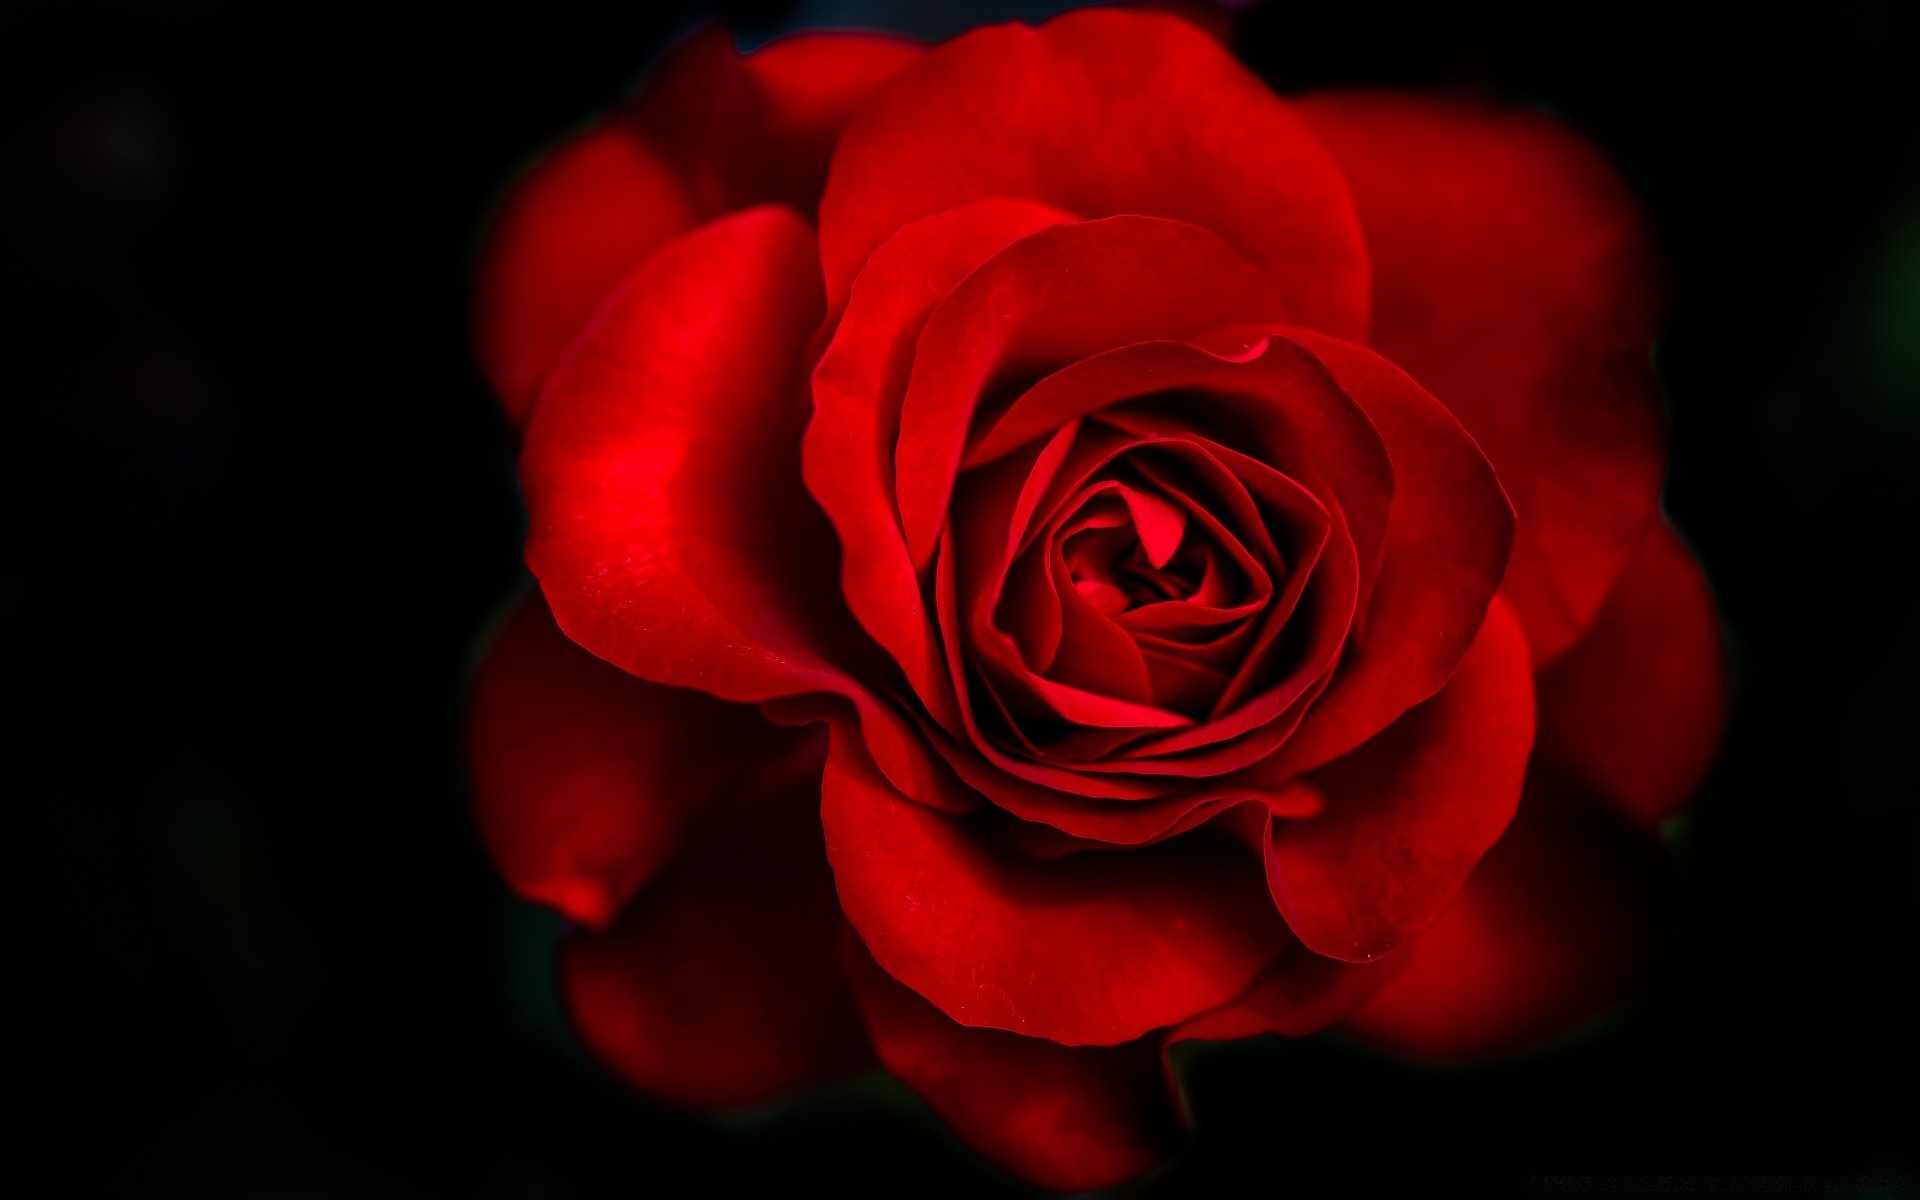 сердечки роза цветок лепесток любовь романтика блюминг романтический любовь цветочные юбилей подарок природа нежный красивые свадьба букет